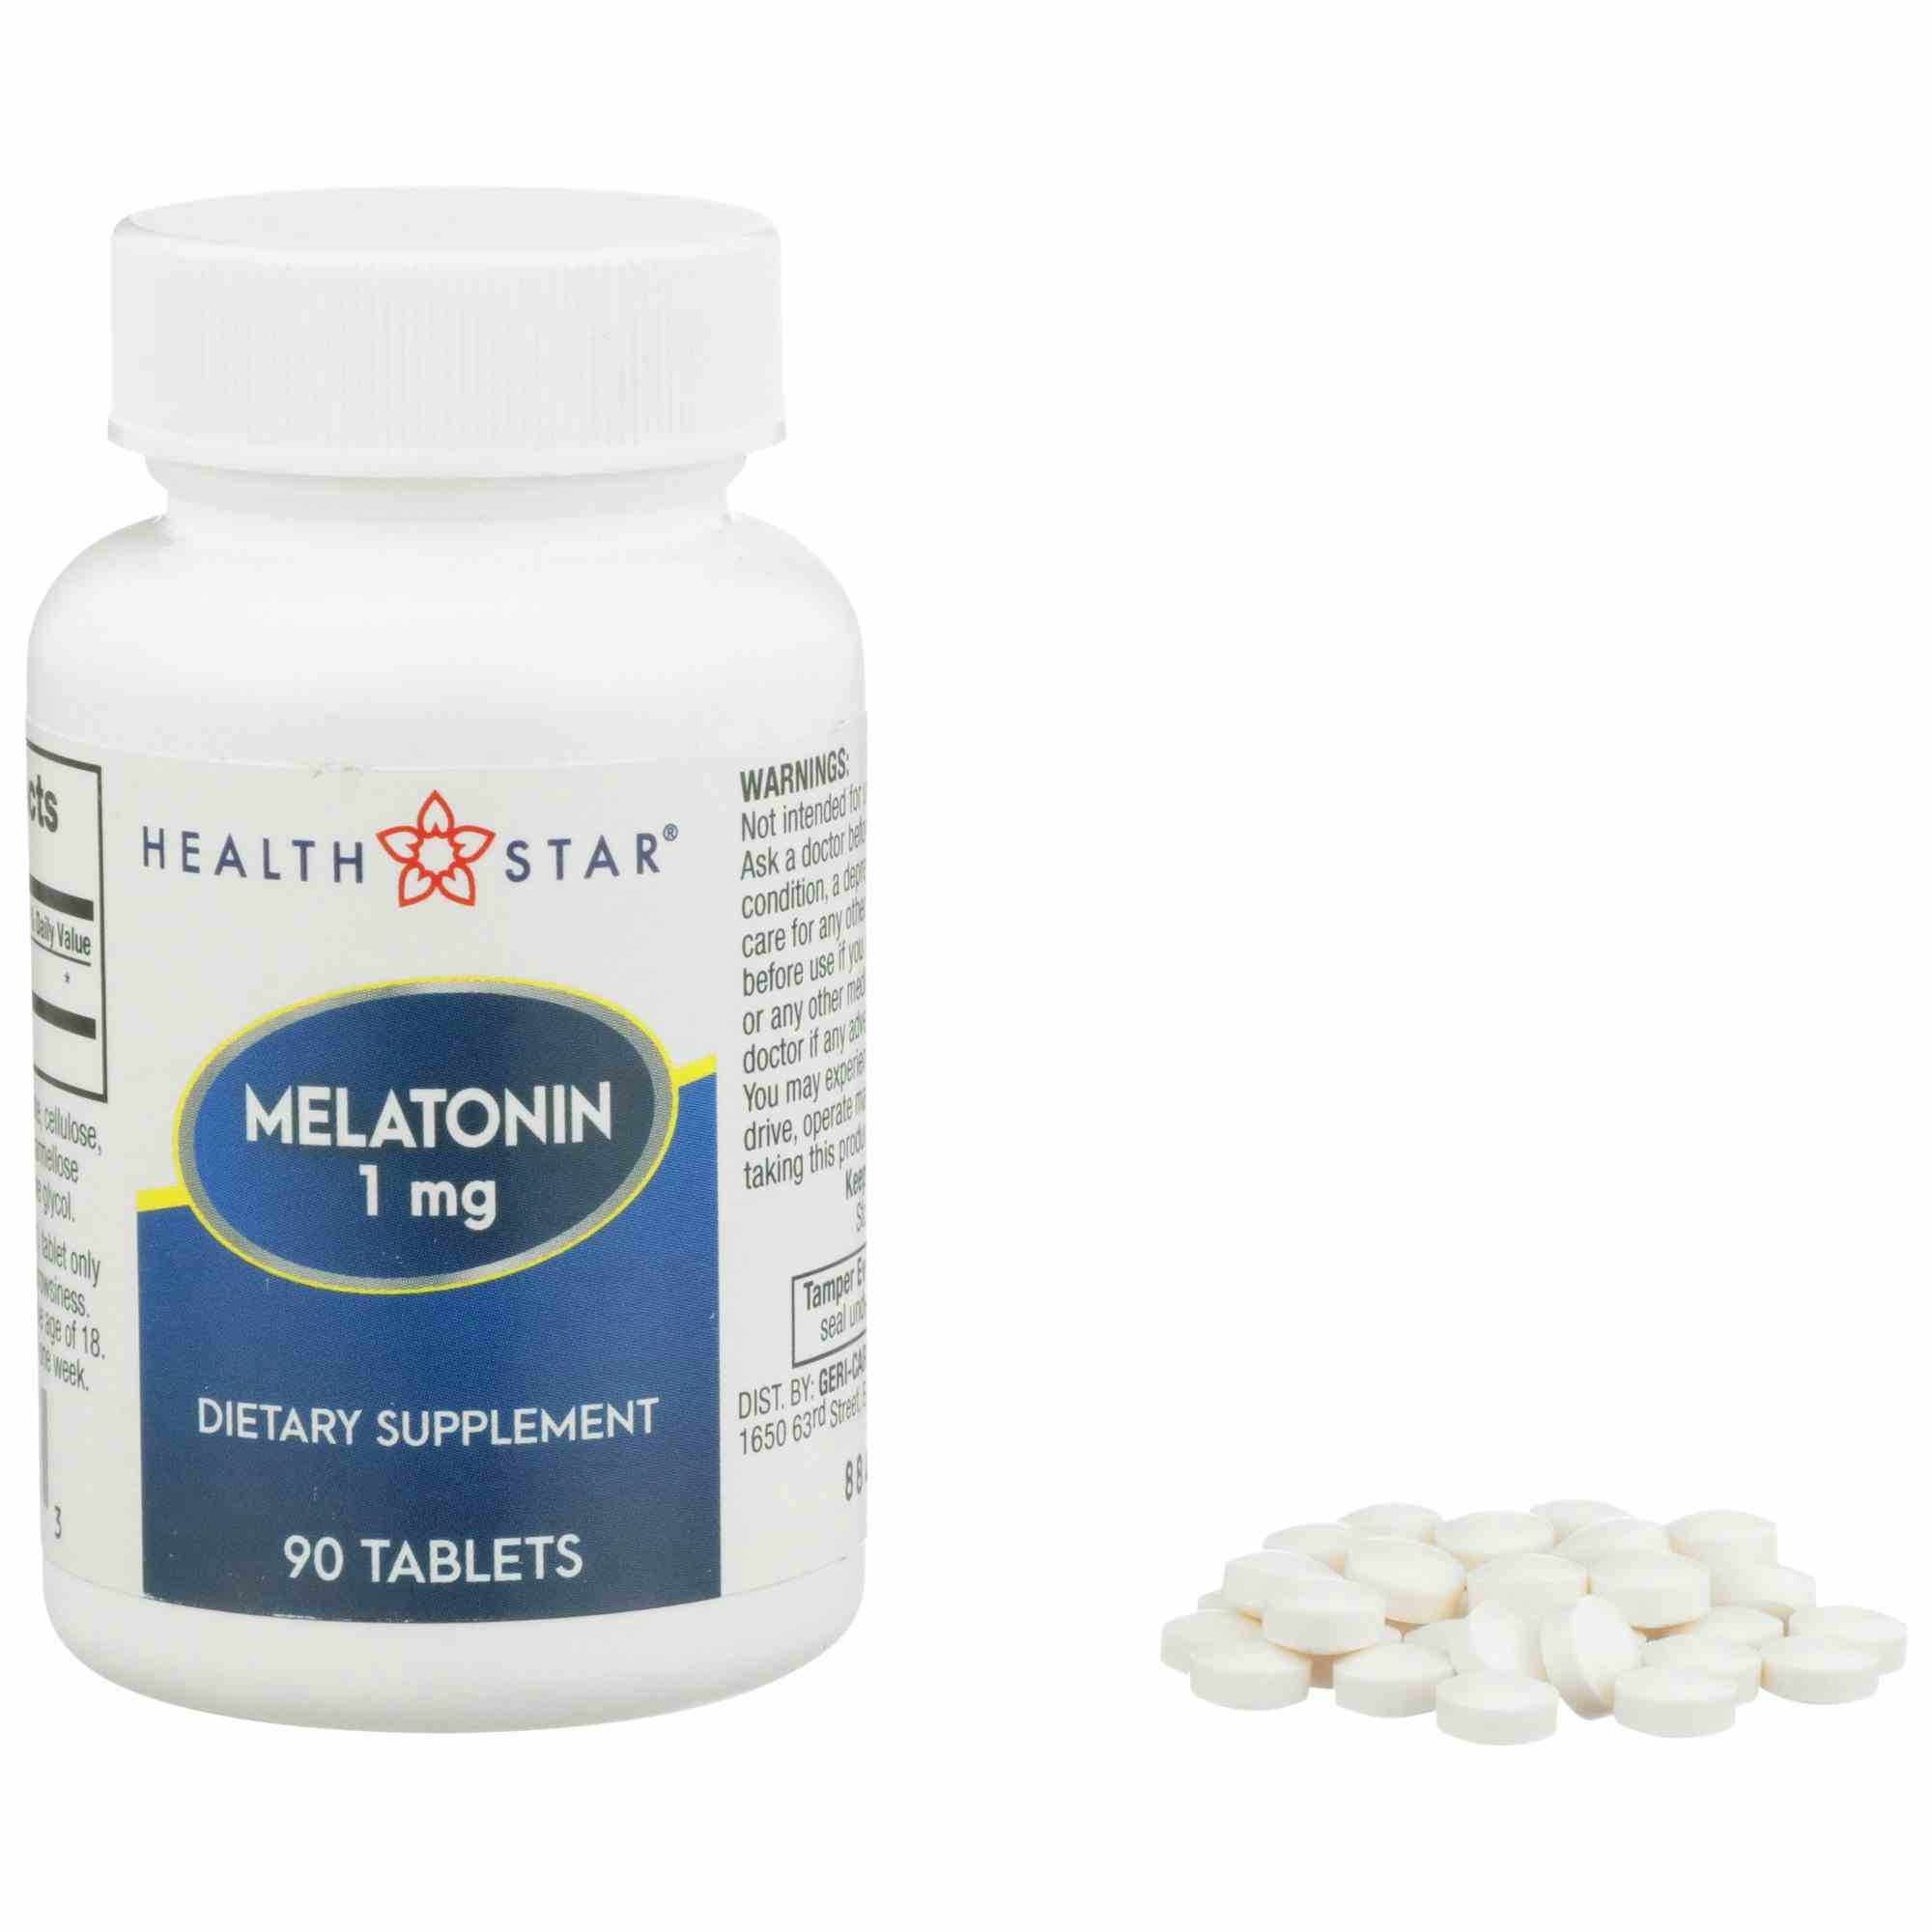 Health Star Melatonin, 1 mg., 90 Tablets, 884-09-GCP, 1 Bottle